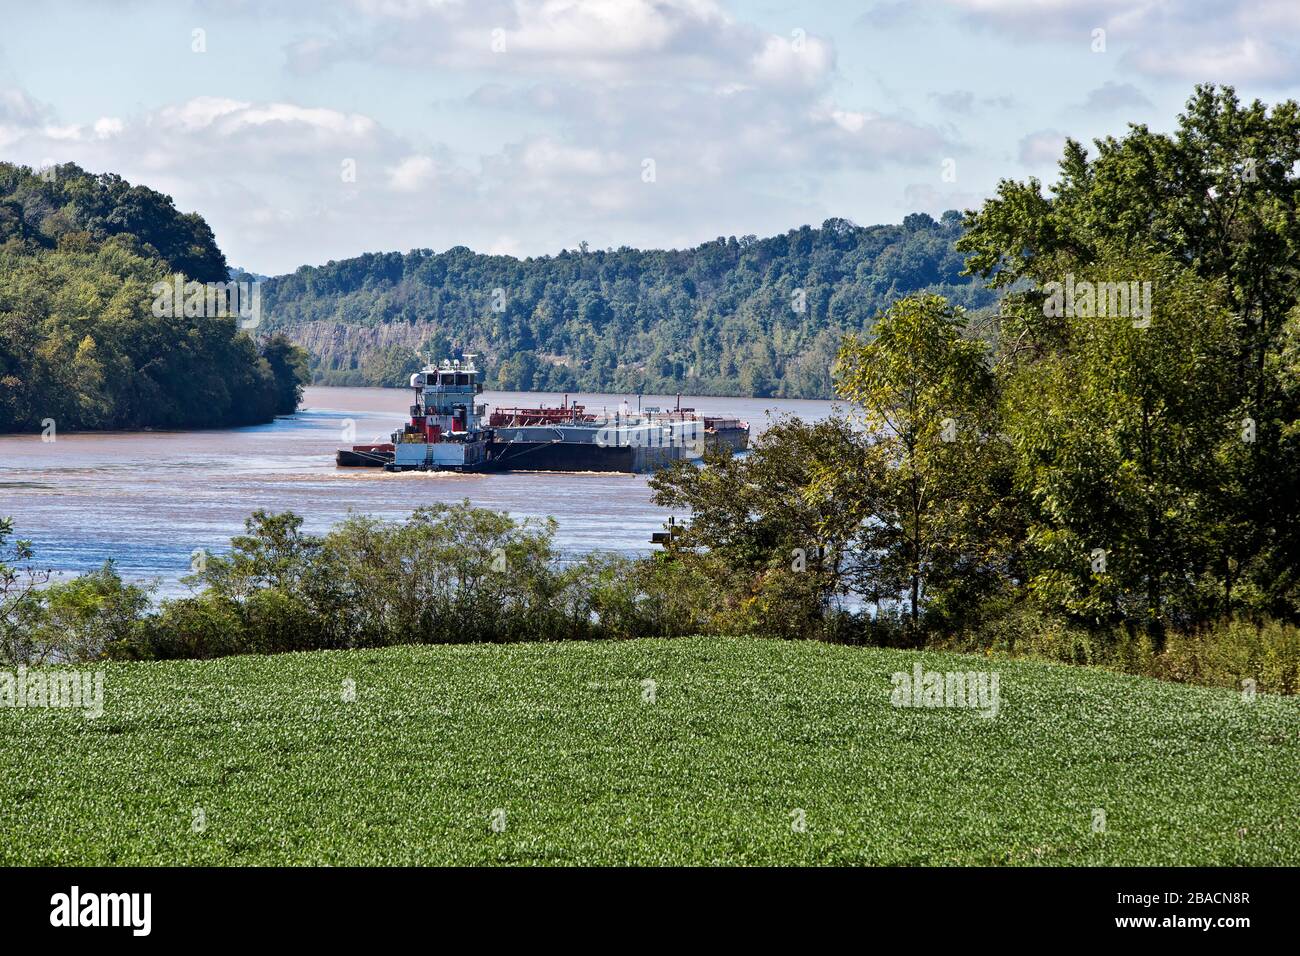 Remolcador empujando barcazas de combustible, árboles nativos a lo largo de la orilla del río, campo de soja 'Glycine max' en primer plano, río Ohio. Foto de stock